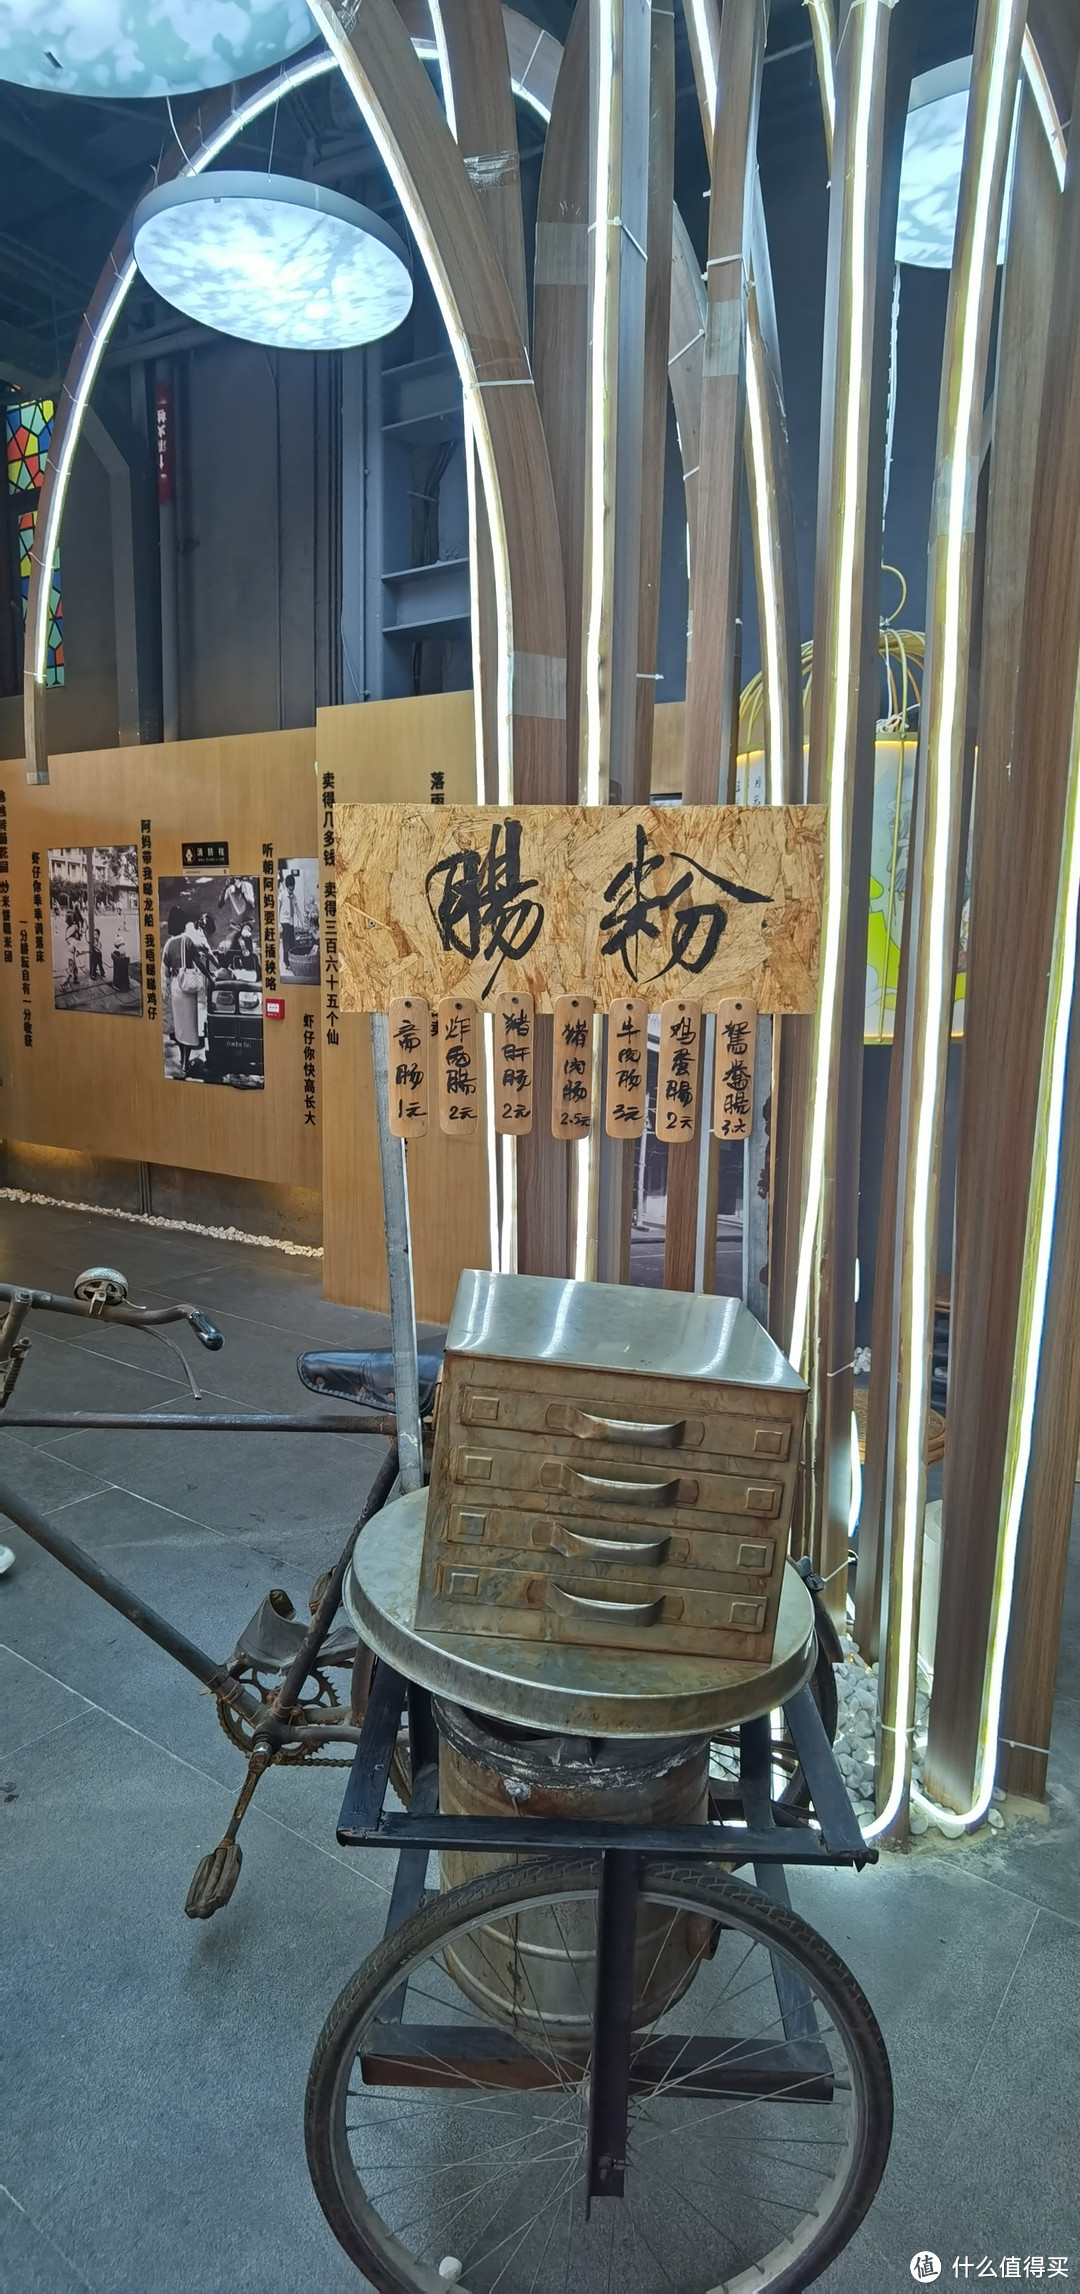 推荐一下广州亲子游活动:华辉拉肠博物馆